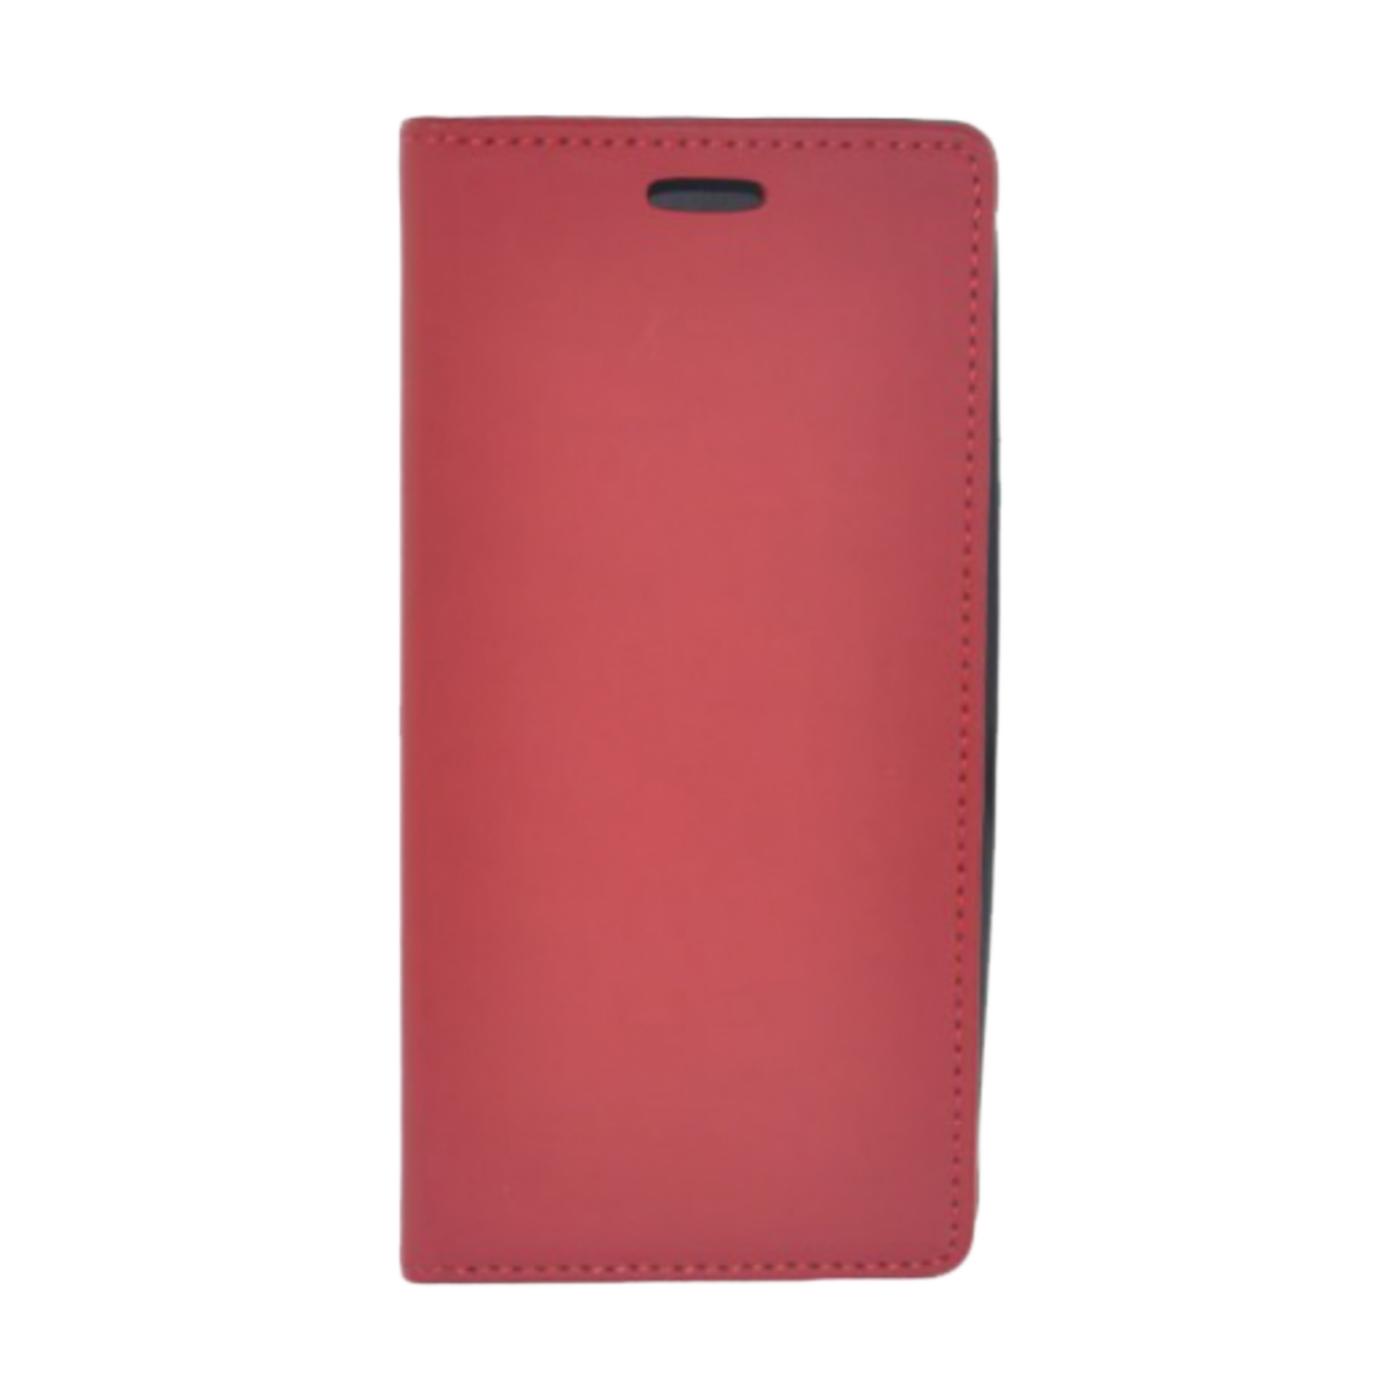 Futrola za mobitel Huawei Y6, crvena